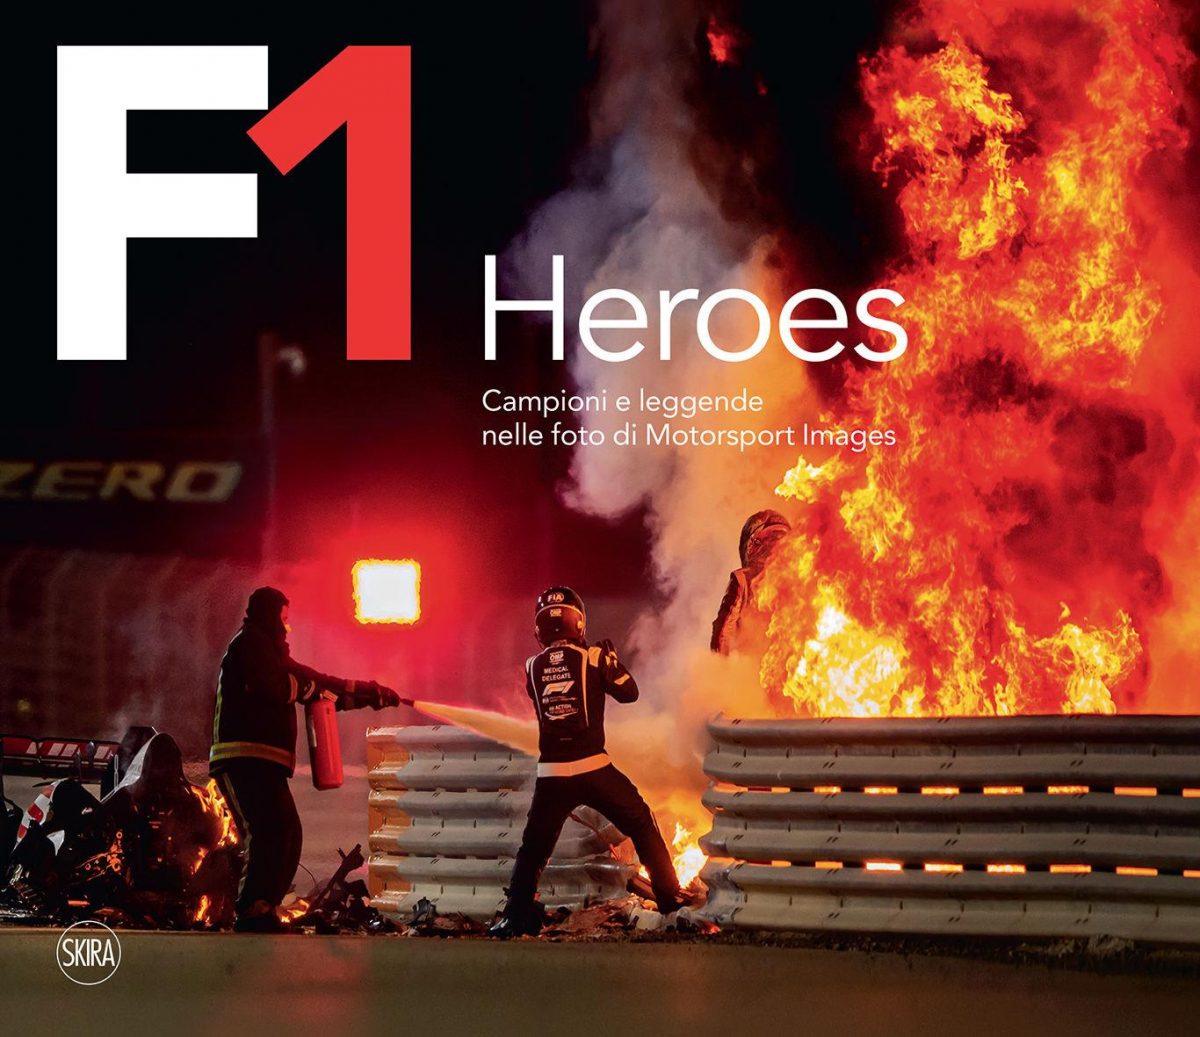 F1 HEROES Champions et légendes sur les photos de Motorsport Images par Ercole Colombo et Giorgio Terruzzi